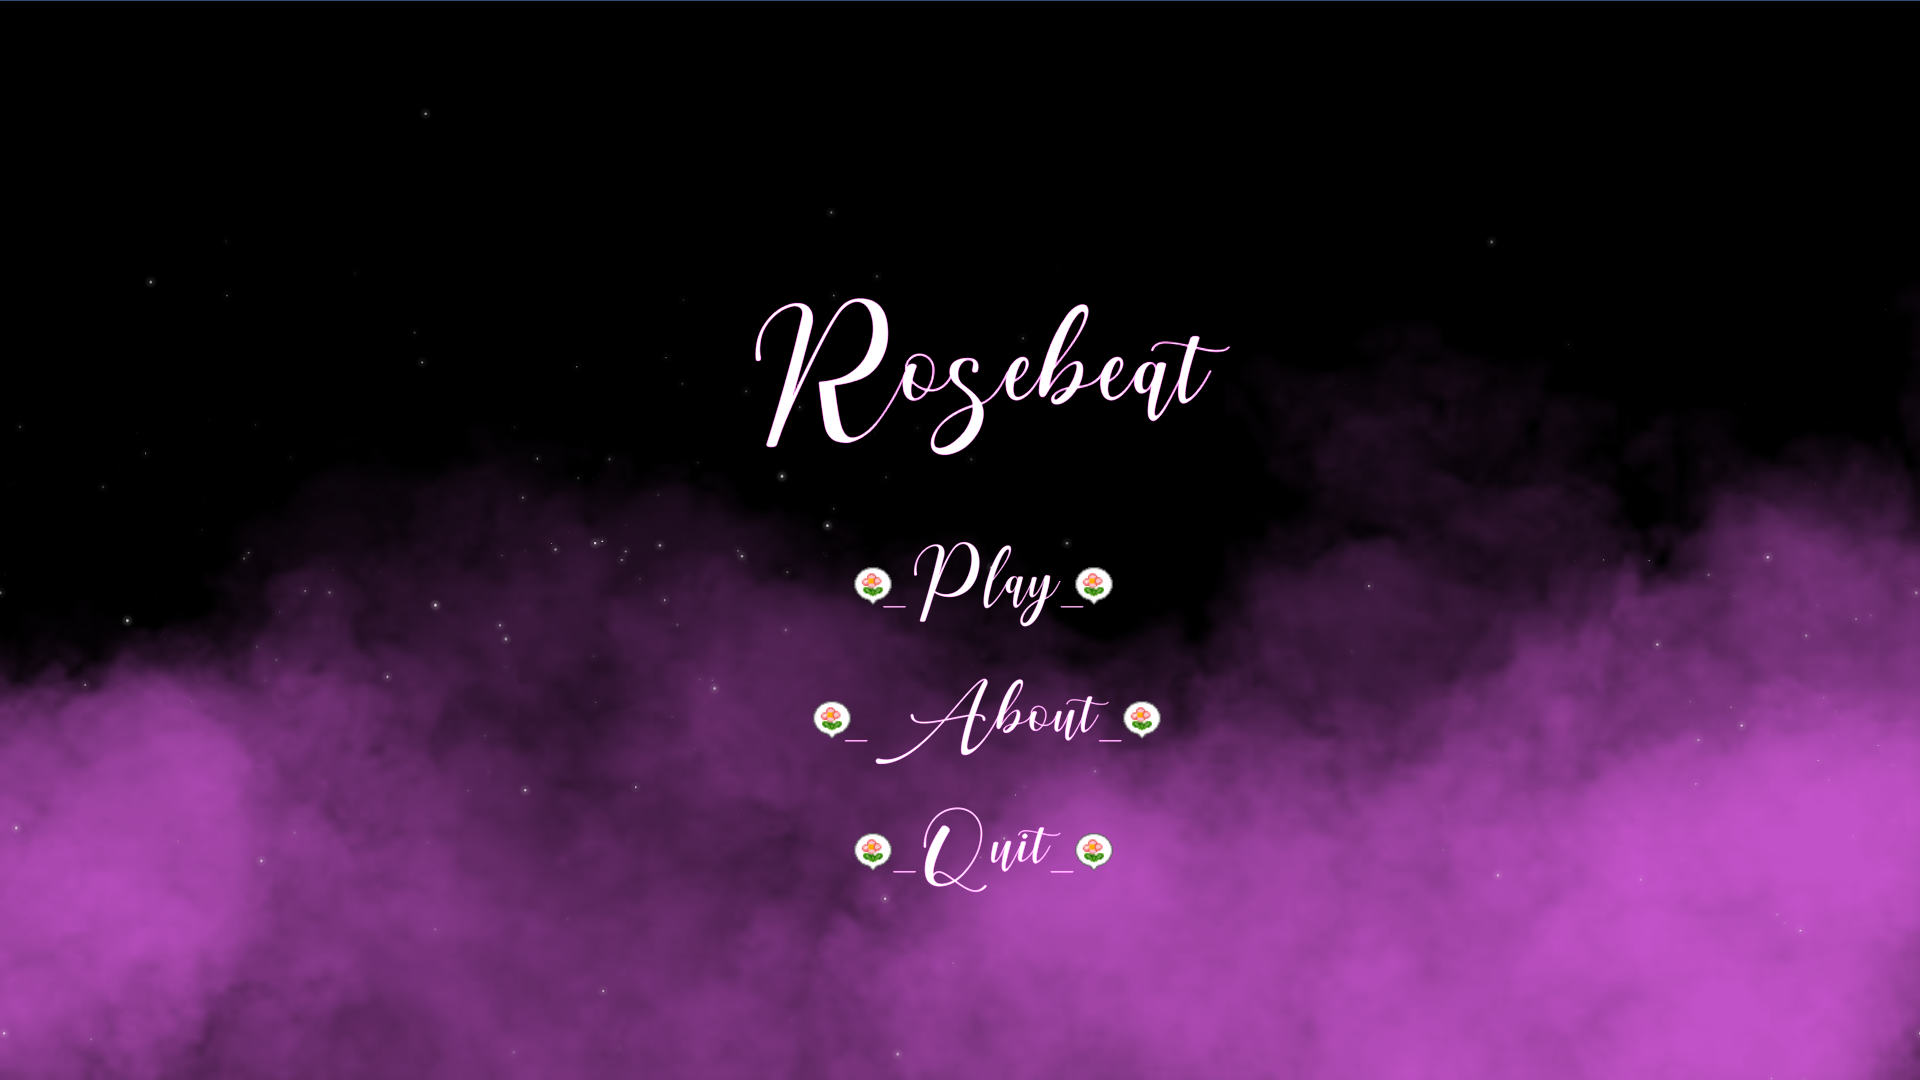 Rosebeat